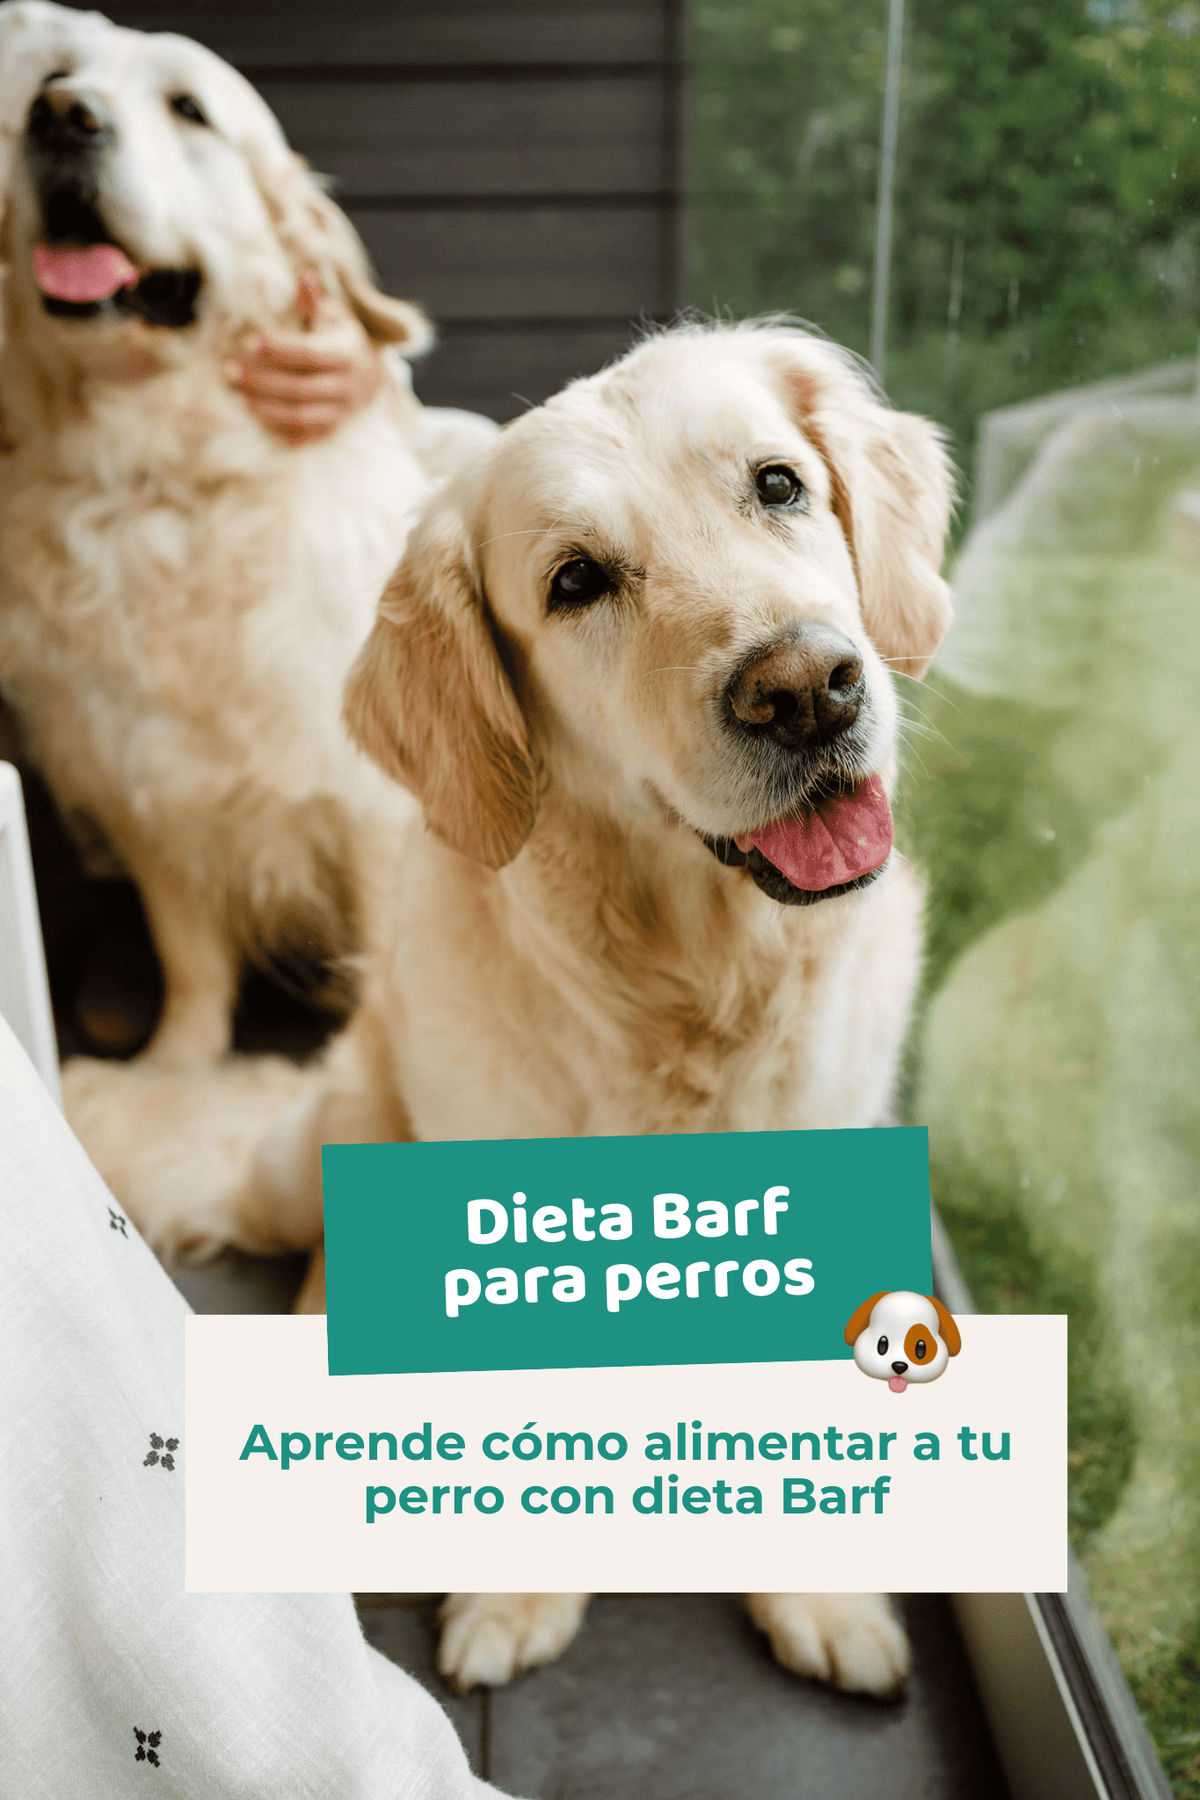 Ebook: Dieta Barf para perros. Guía completa